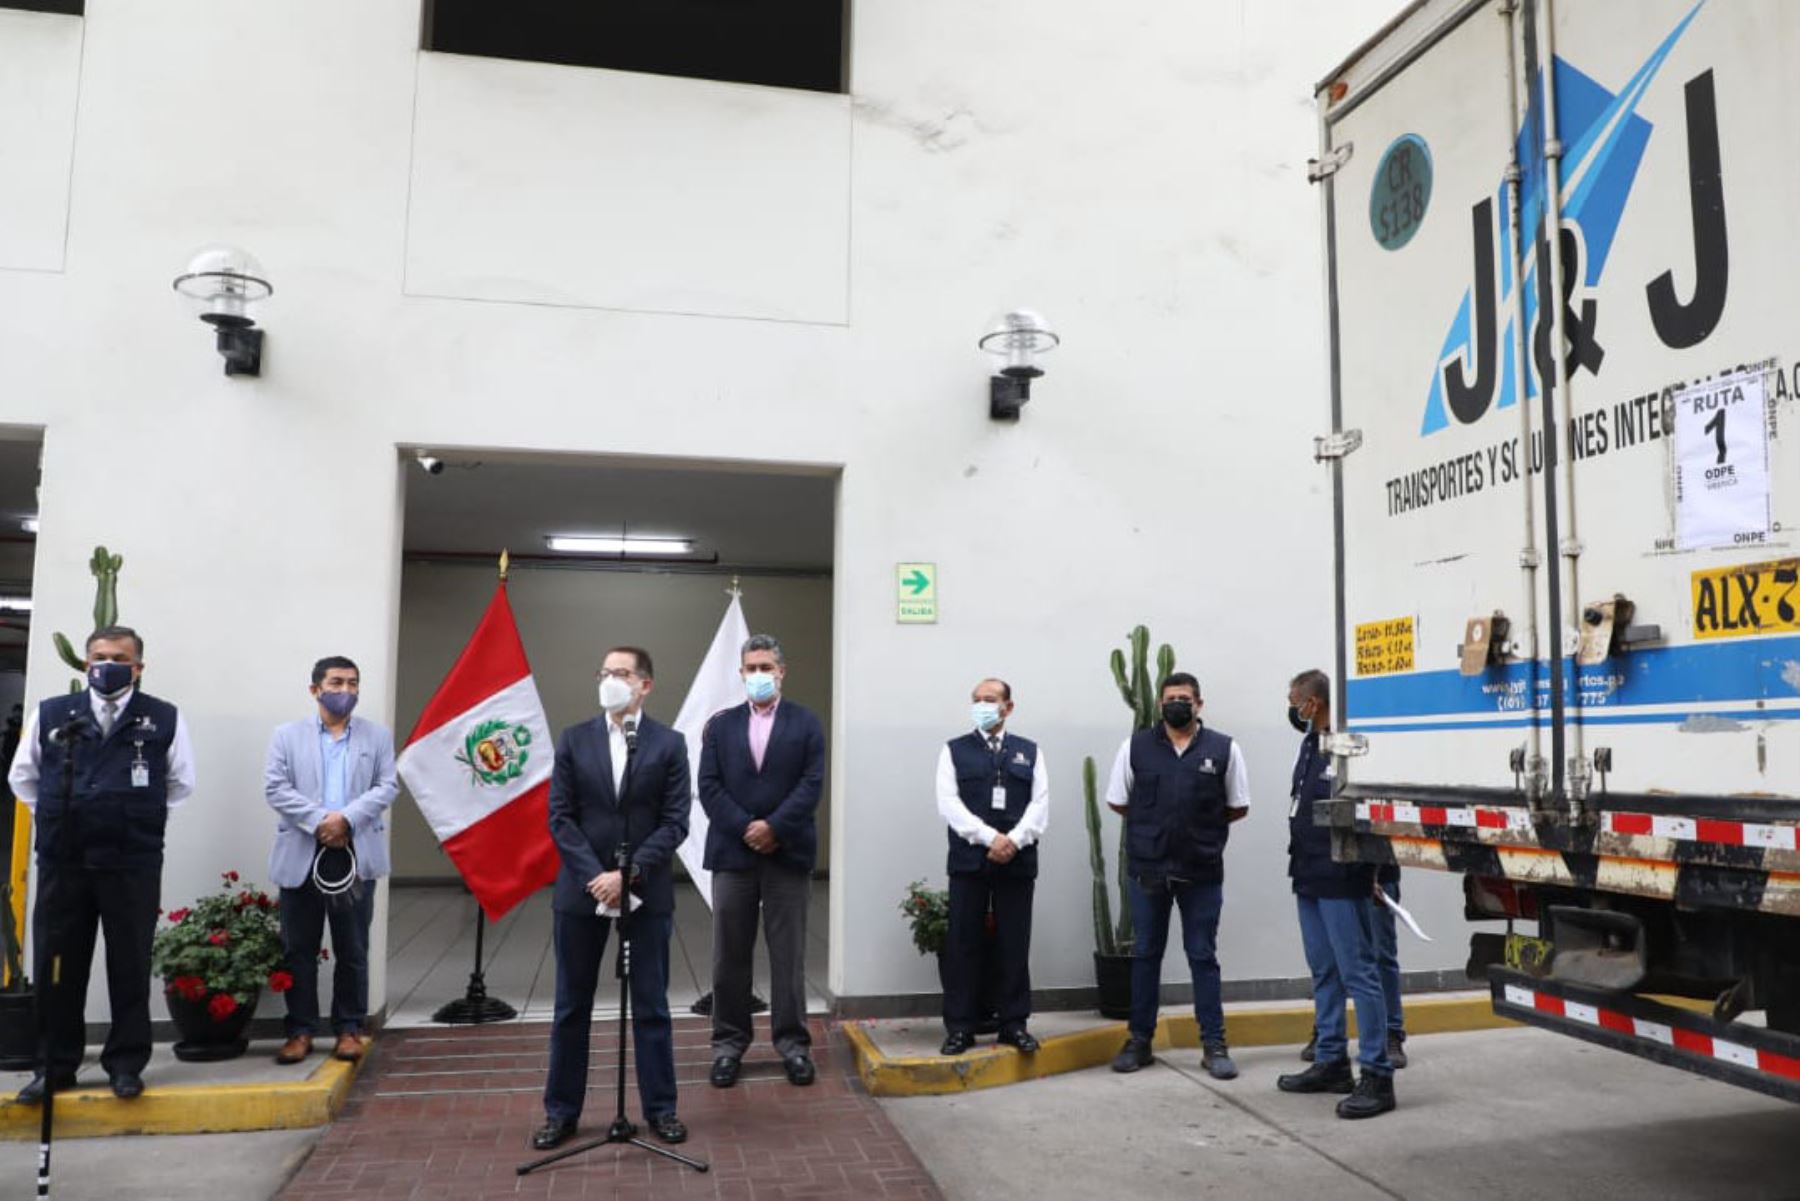 Entrega de material electoral a Cancillería del Perú
 para sufragio de peruanos en el extranjero.
Foto: Onpe